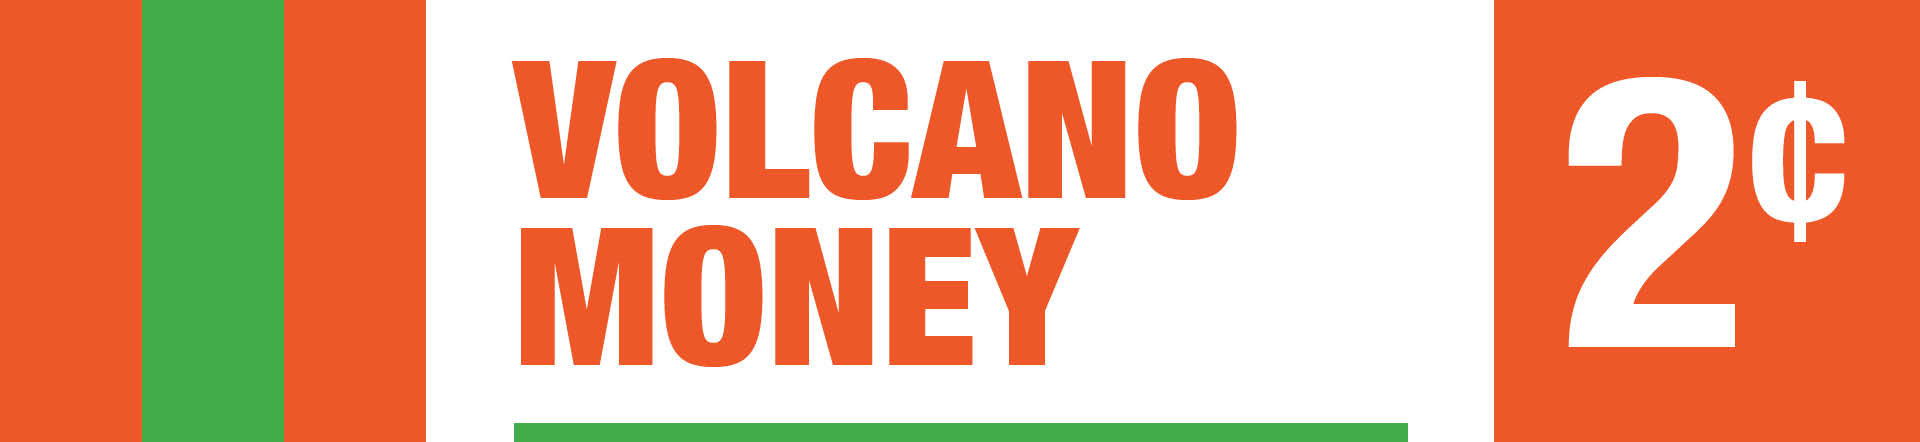 Volcano Money